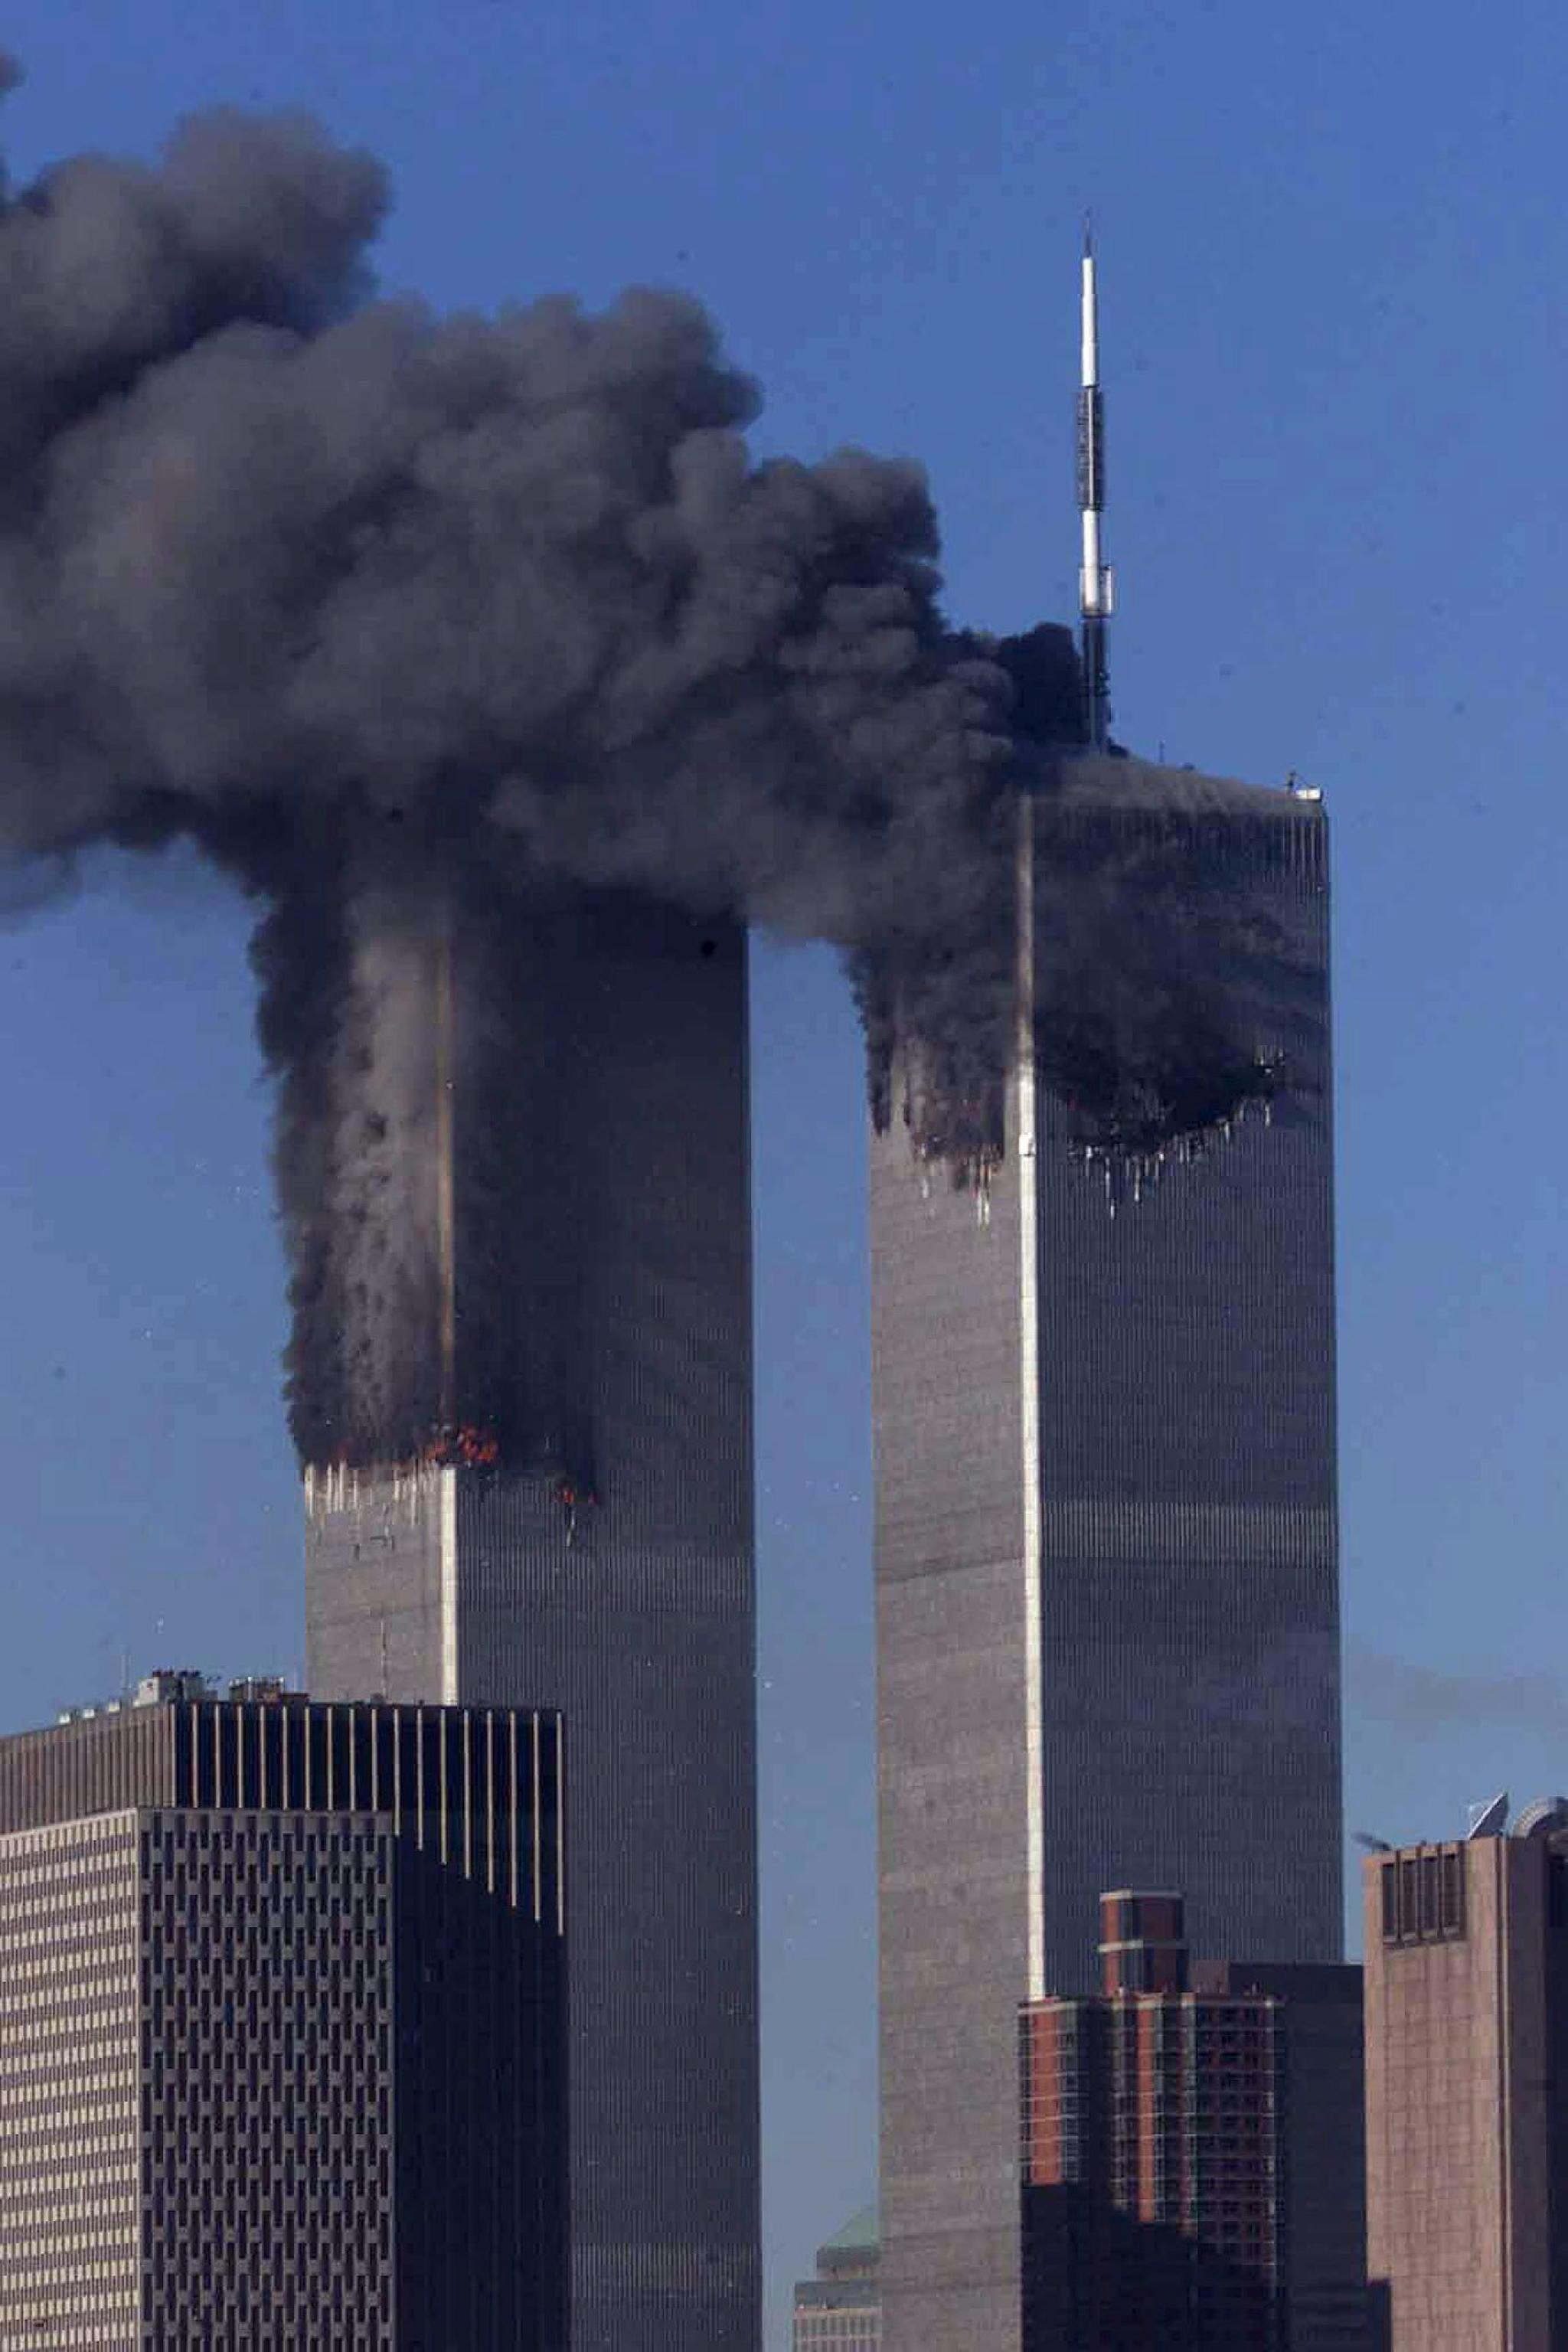 Теракт в 2001 году 11 сентября. Башни Близнецы в Нью-Йорке 11 сентября. ВТЦ Нью-Йорк 2001.